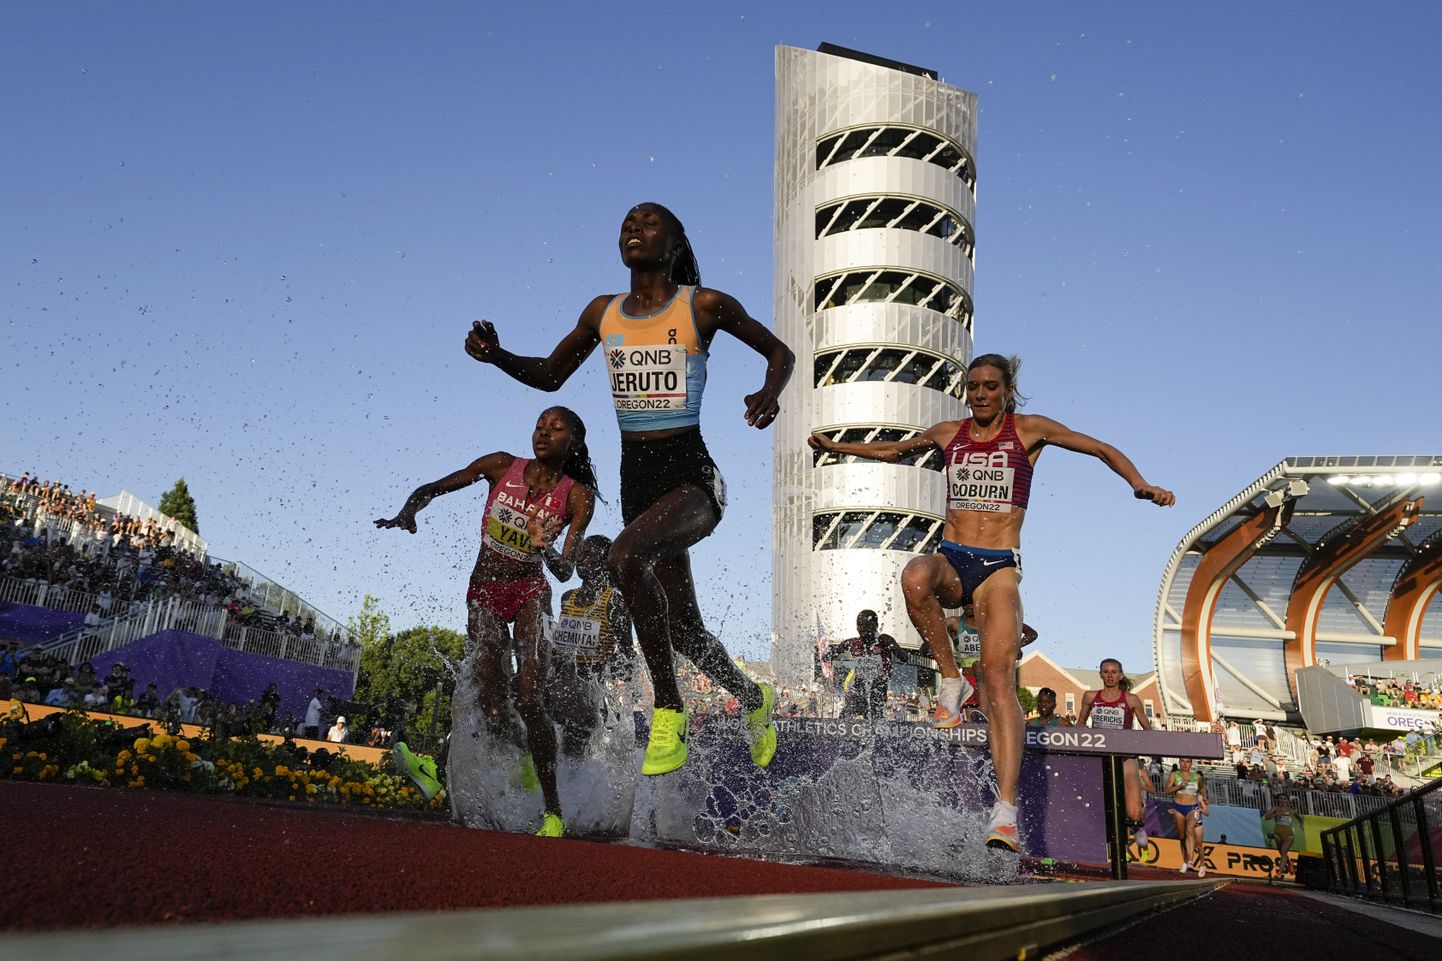 Нора Джеруто, кенийка, представляющая Казахстан и завоевавшая золото прошлогоднего чемпионата мира в беге с препятствиями, стала последней знаменитостью, уличенной в употреблении допинга. В Усиленных играх она могла бы спокойно продолжать соревноваться.